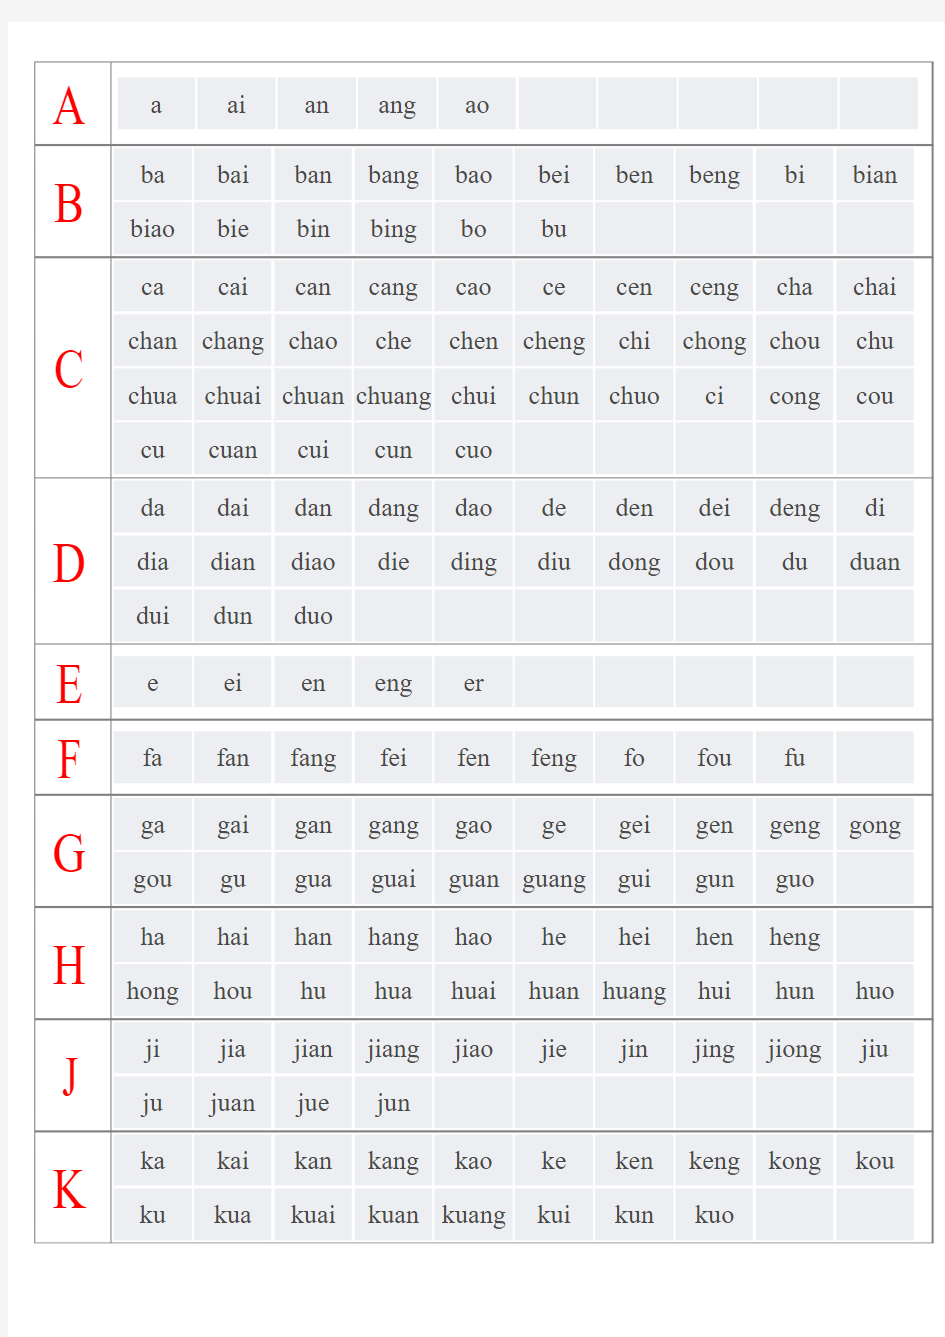 汉语拼音音节索引表-表格无汉字